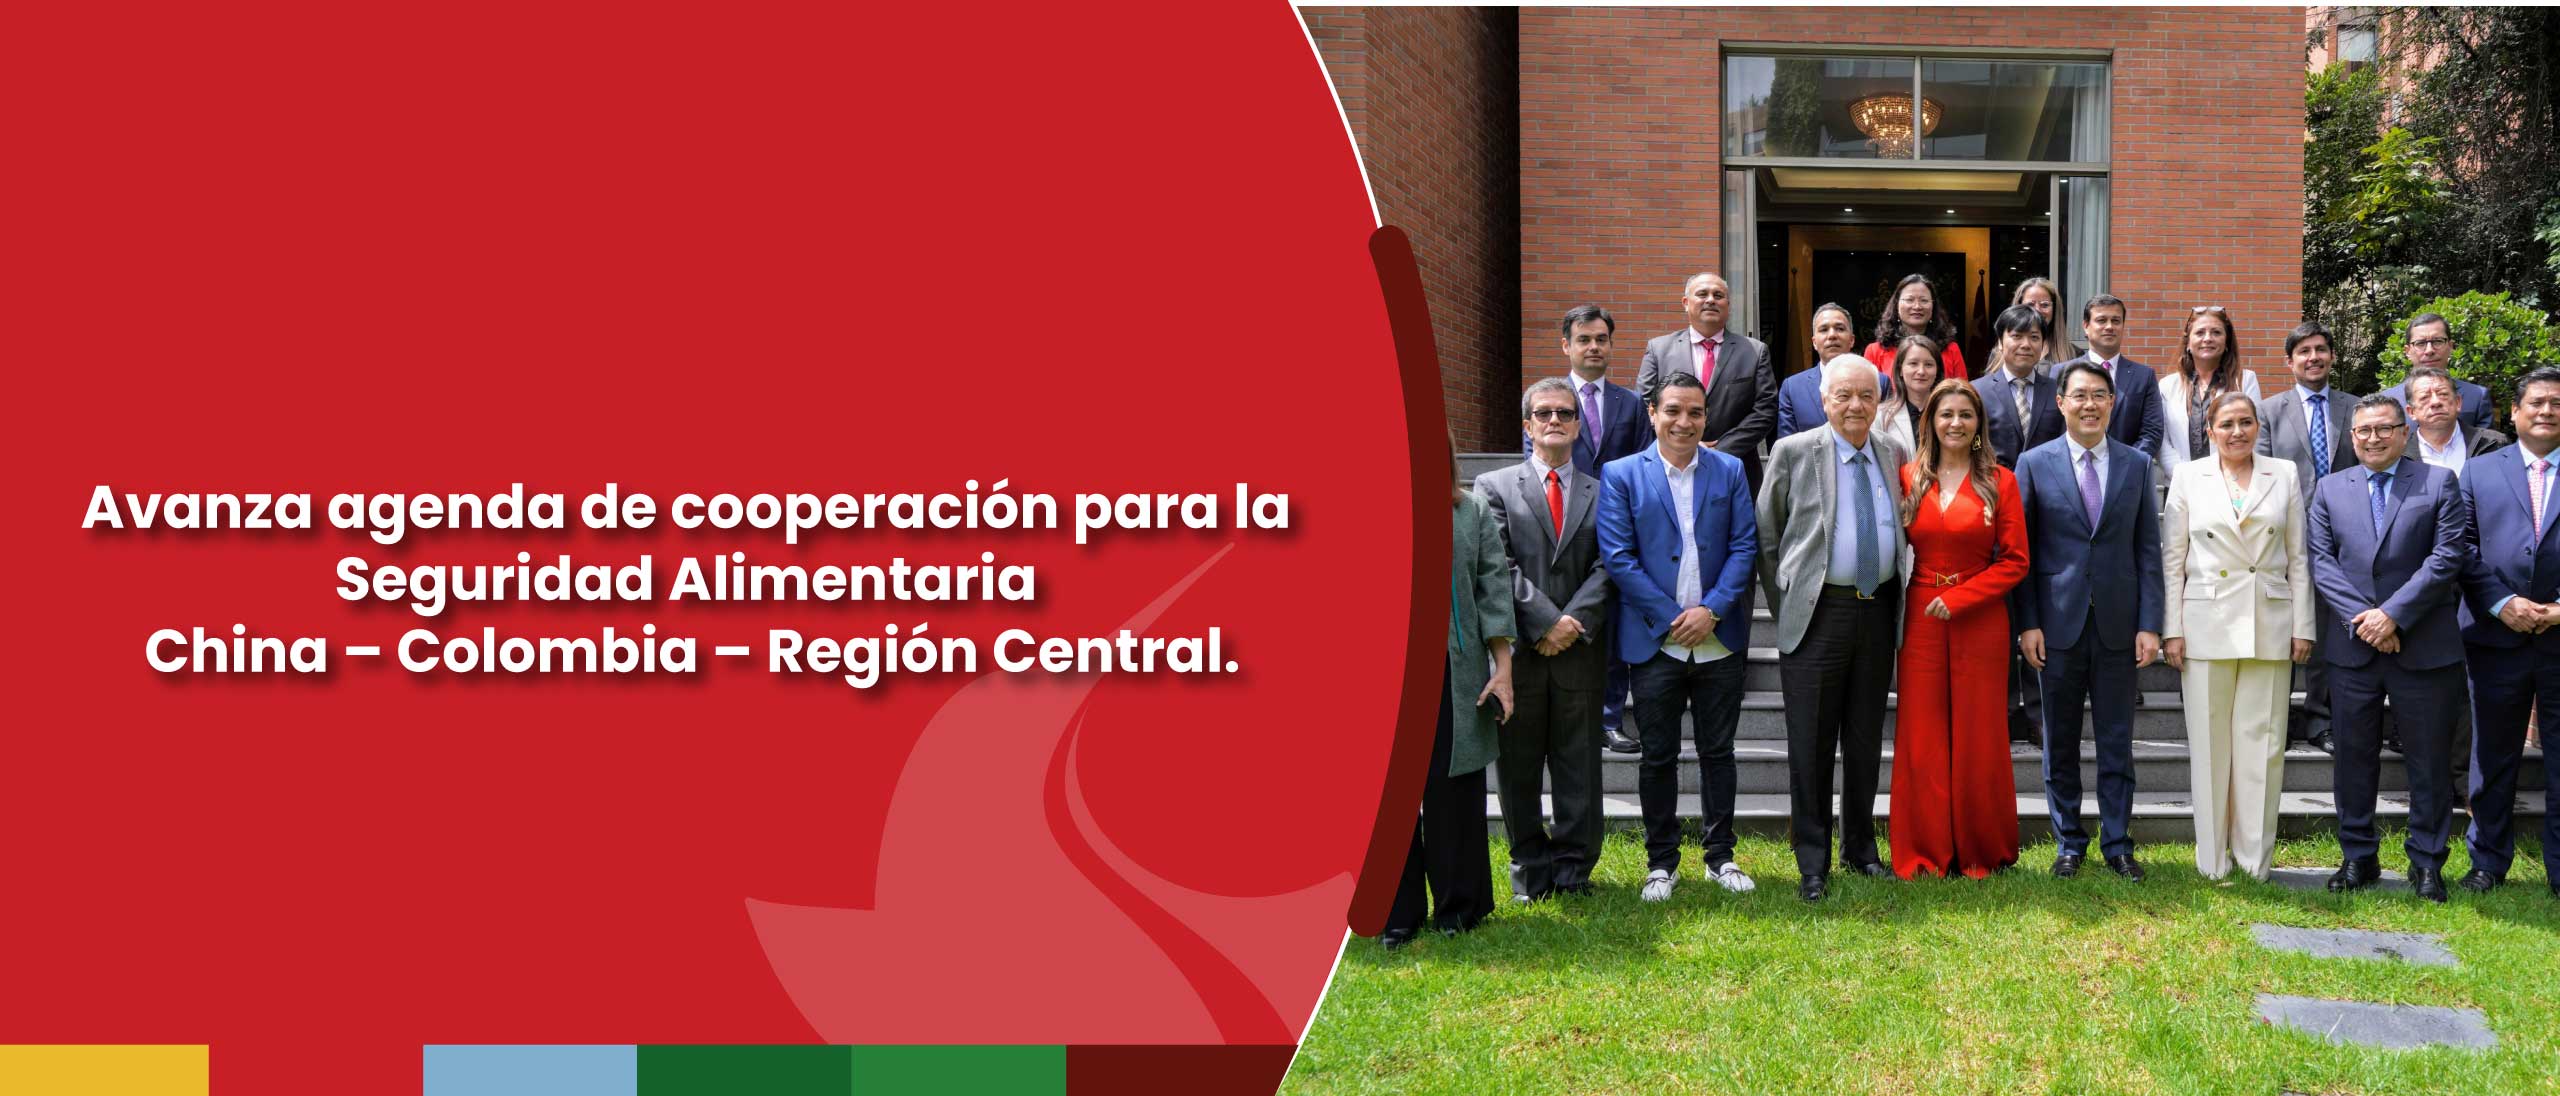 Avanza agenda de cooperación para la Seguridad Alimentaria China – Colombia – Región Central.